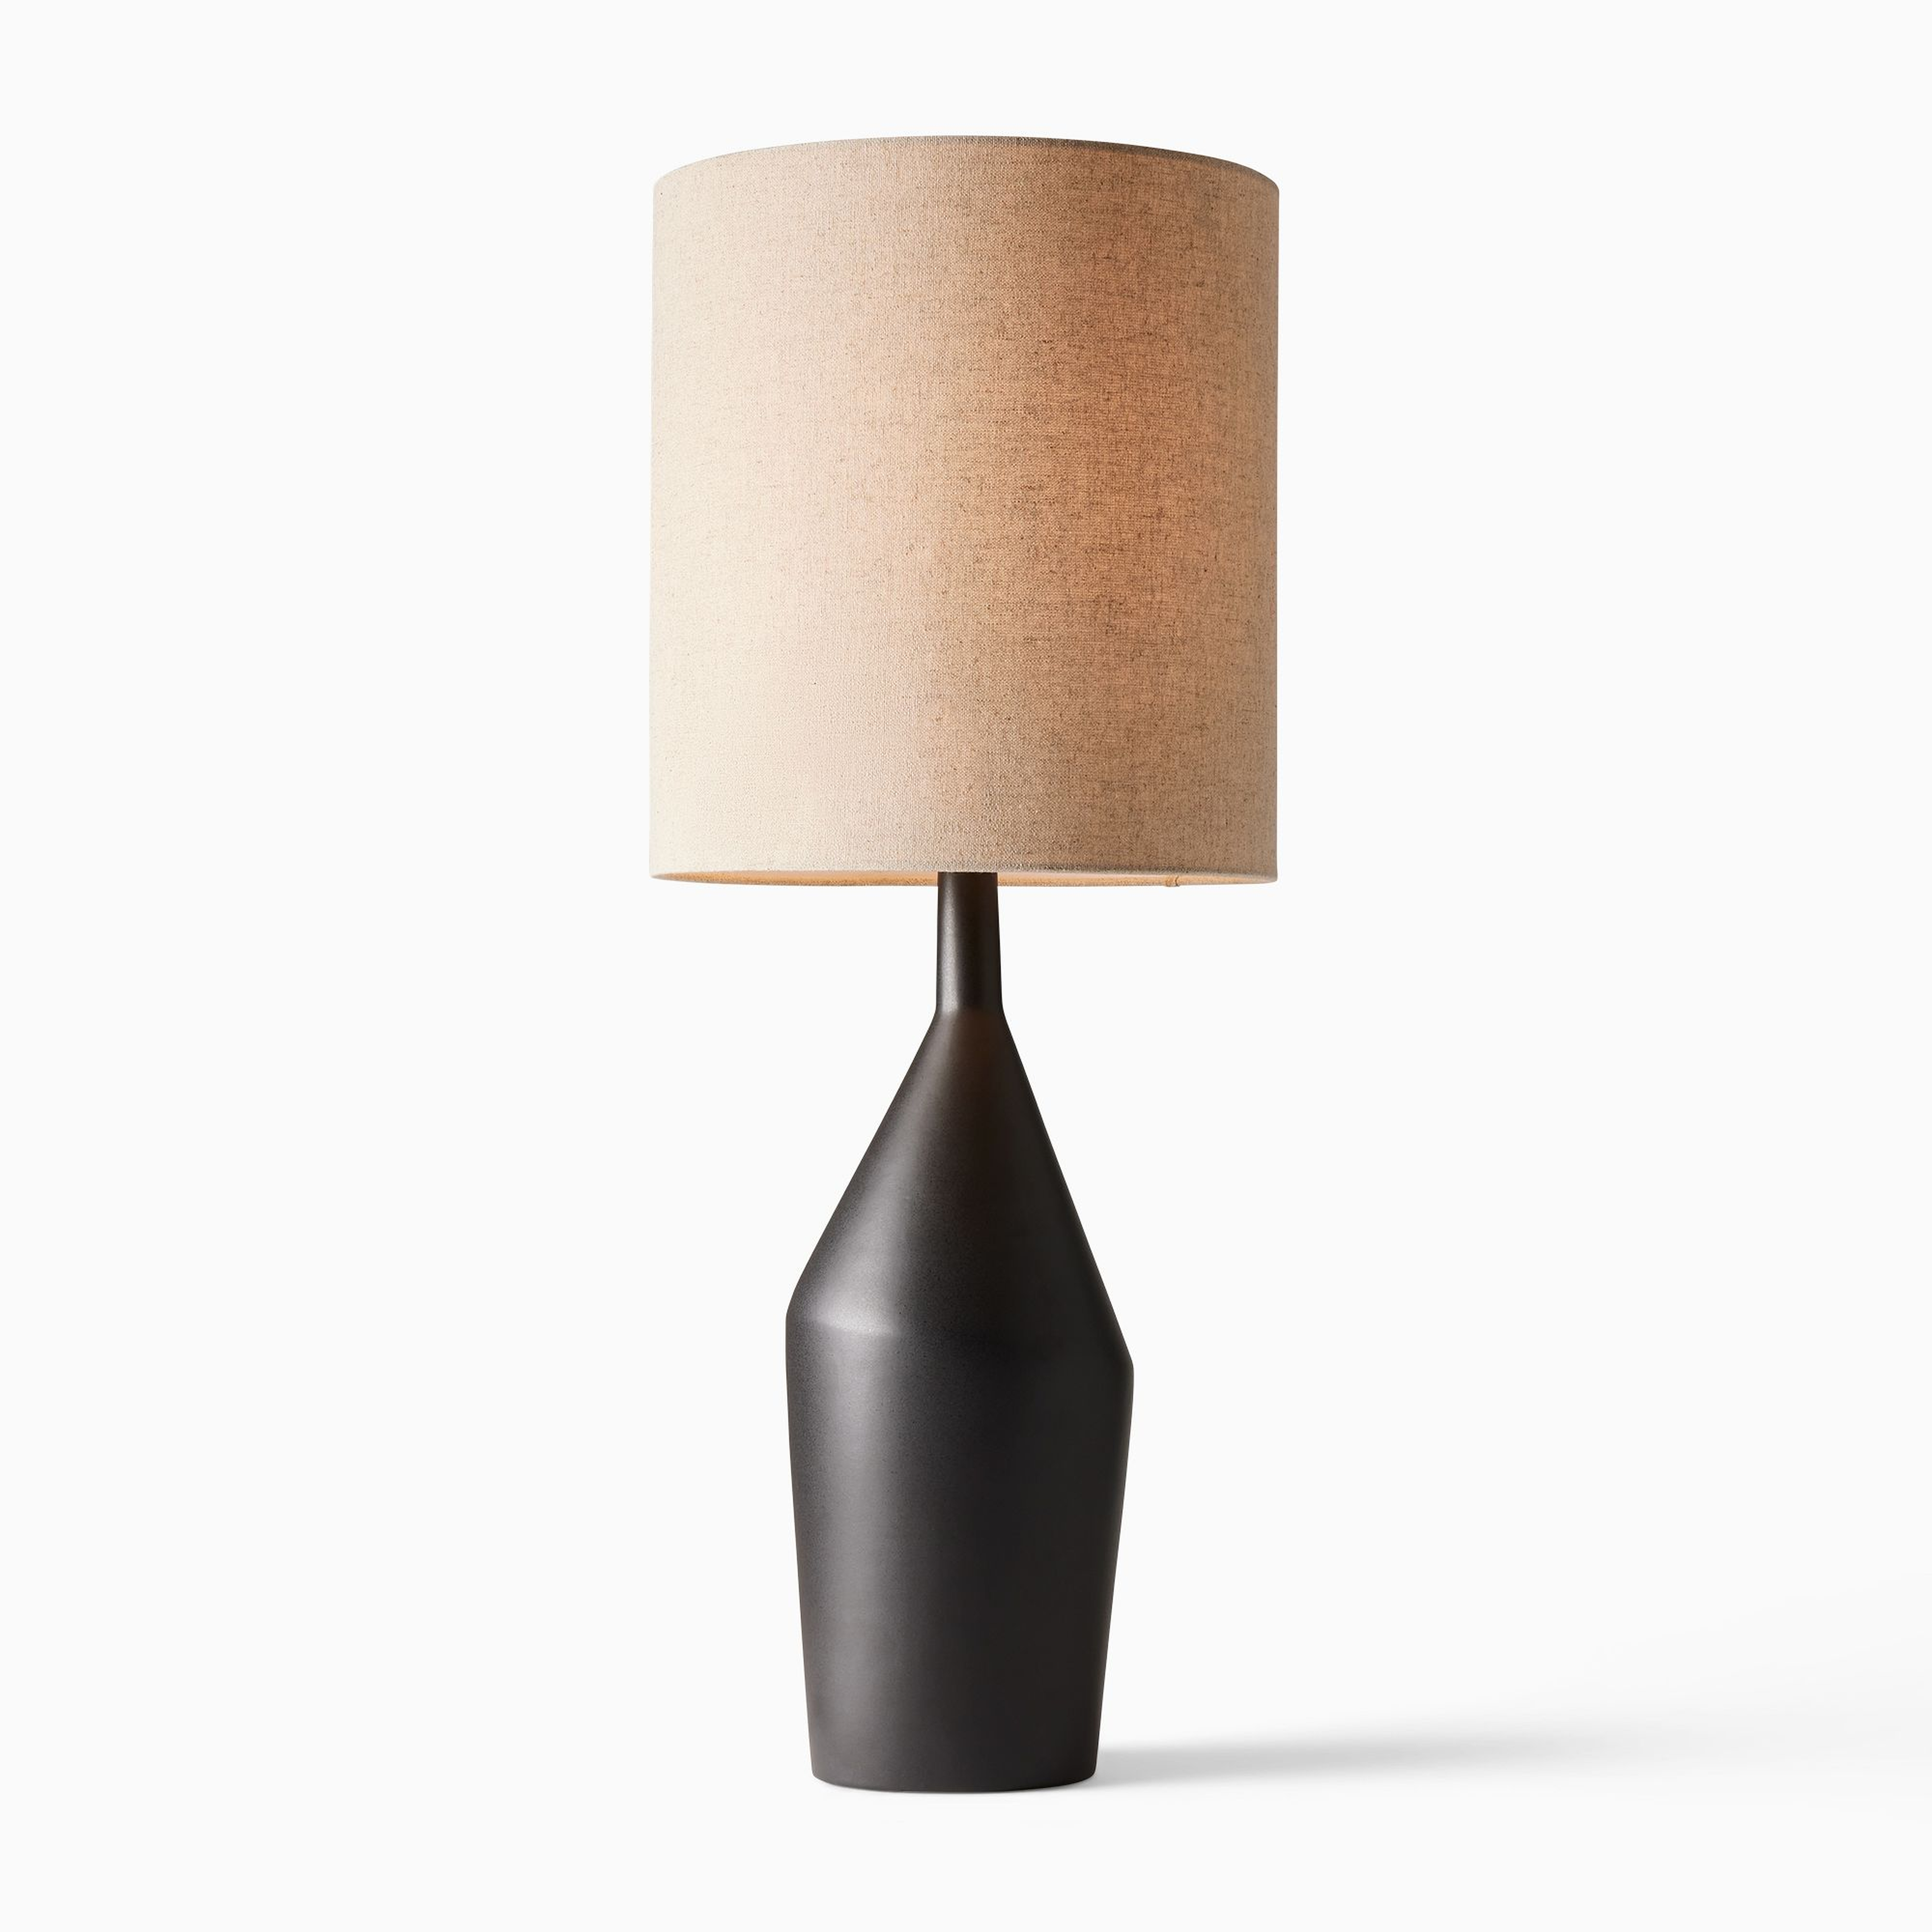 Asymmetric Ceramic Table Lamp Black Natural Linen (31") - West Elm